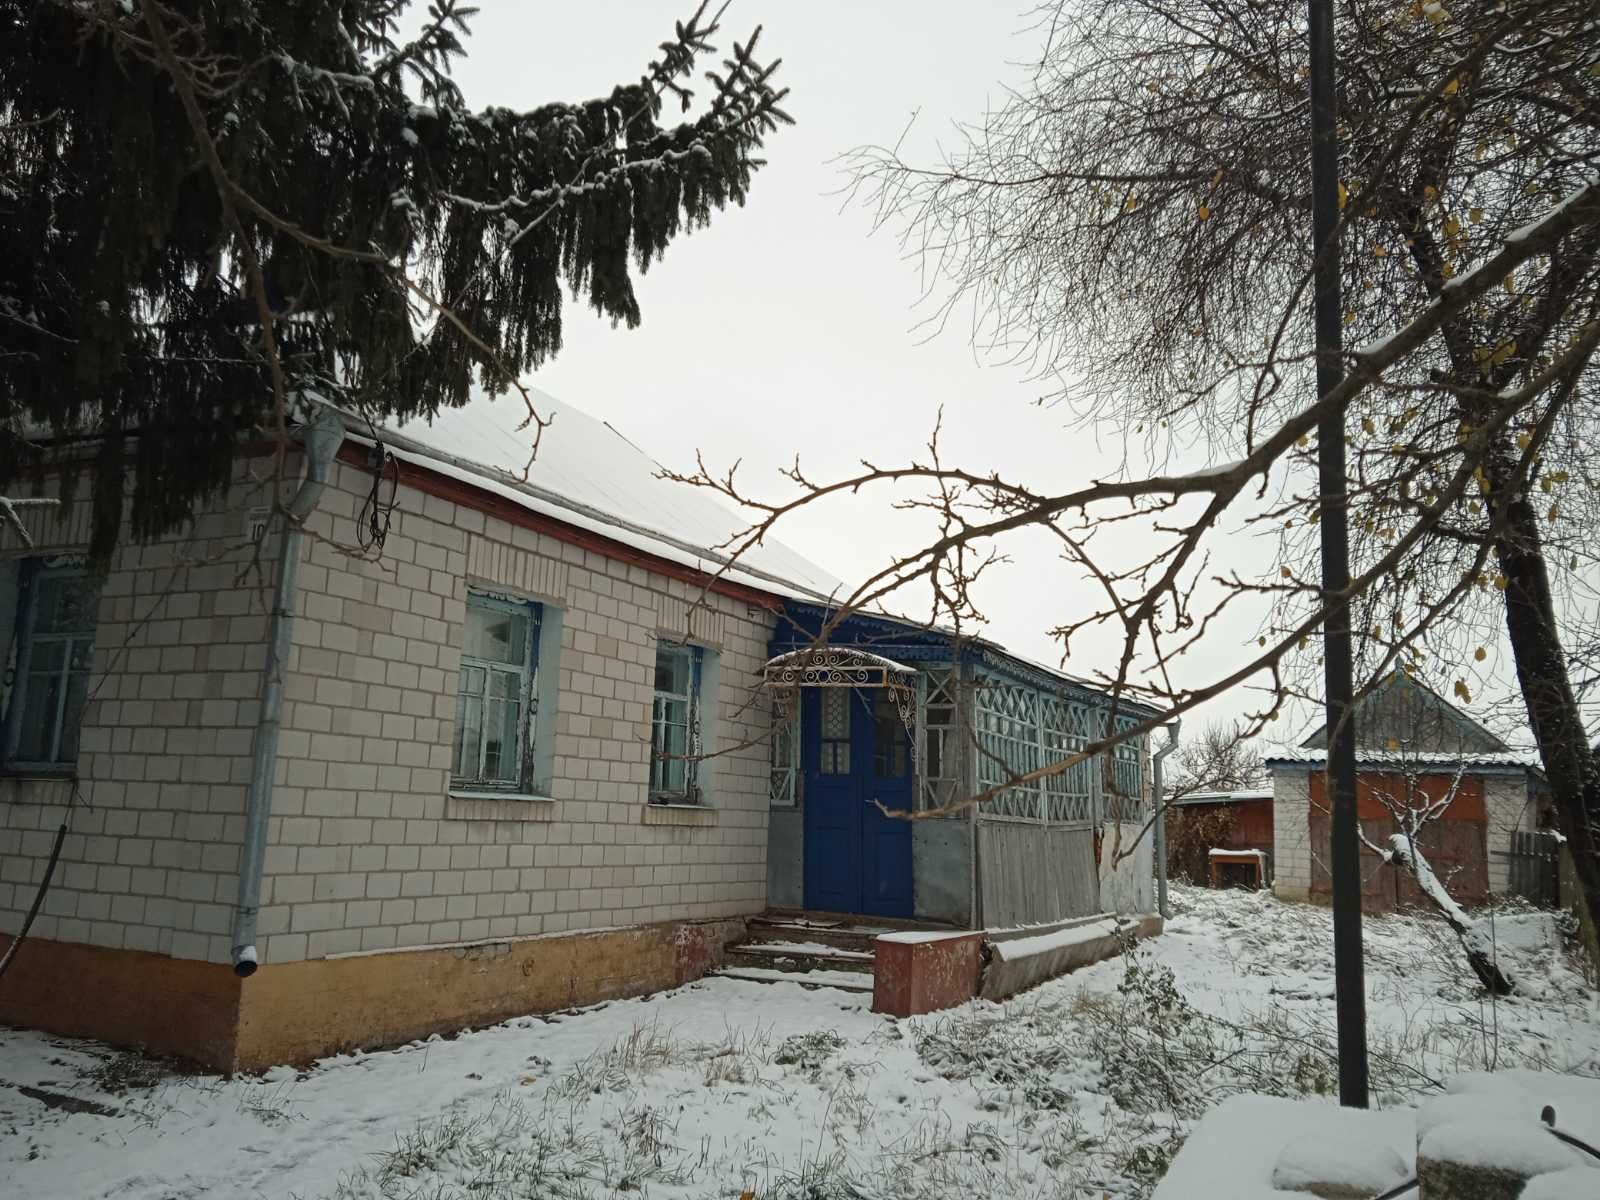 Продається будинок в селi Усівка, Згурiвська ОТГ,Київська обл.